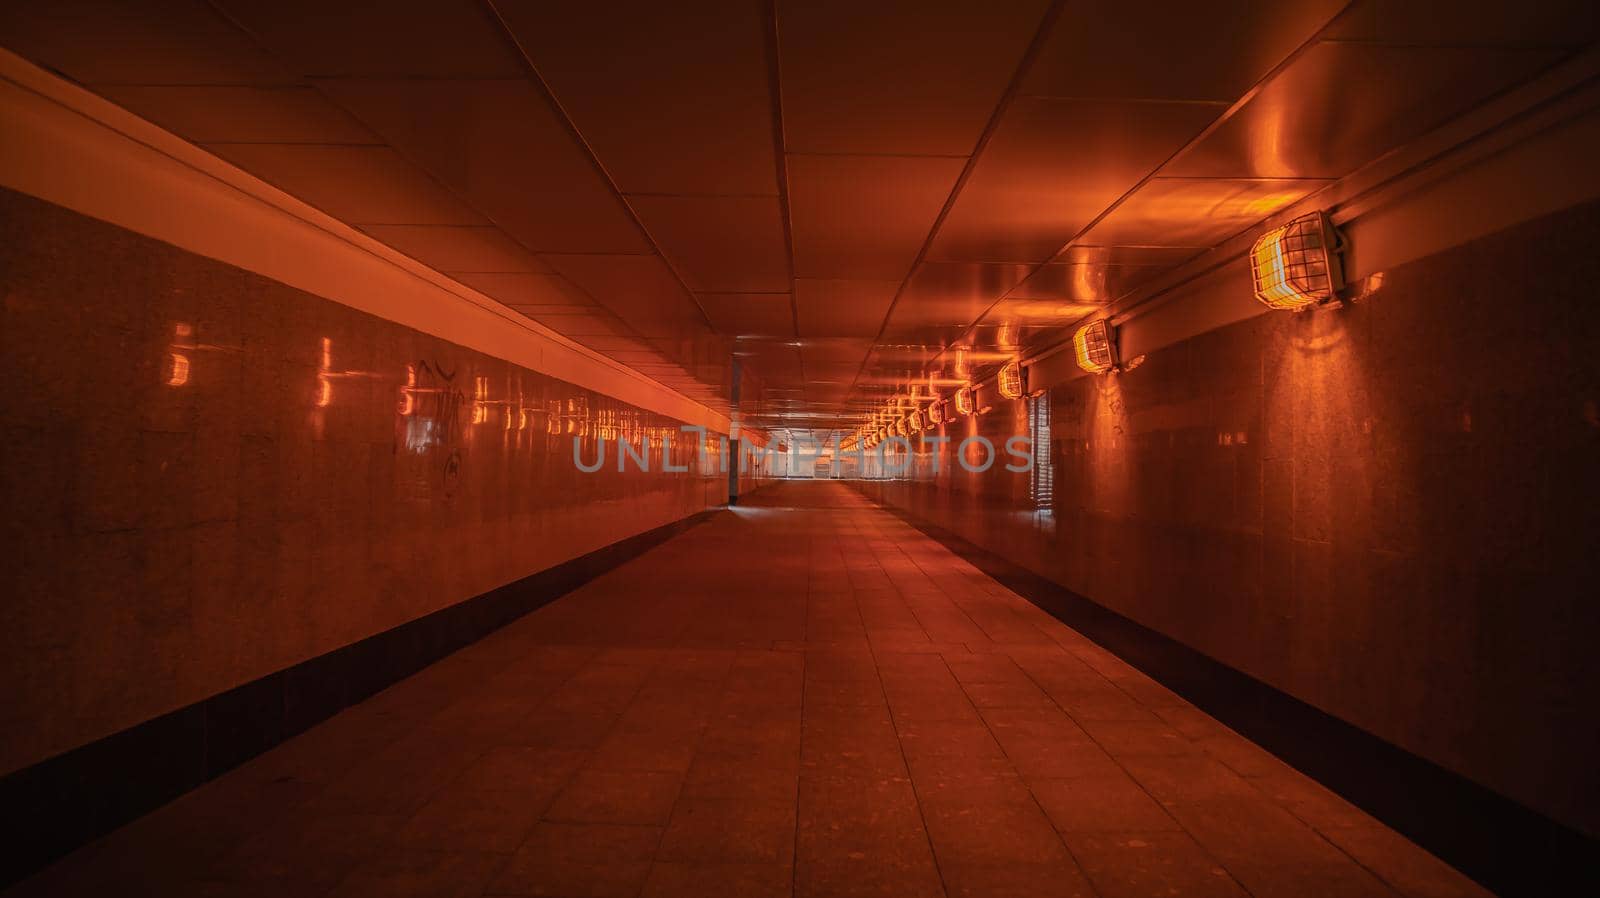 Pedestrian Underground Tunnel Under the Road. High quality photo